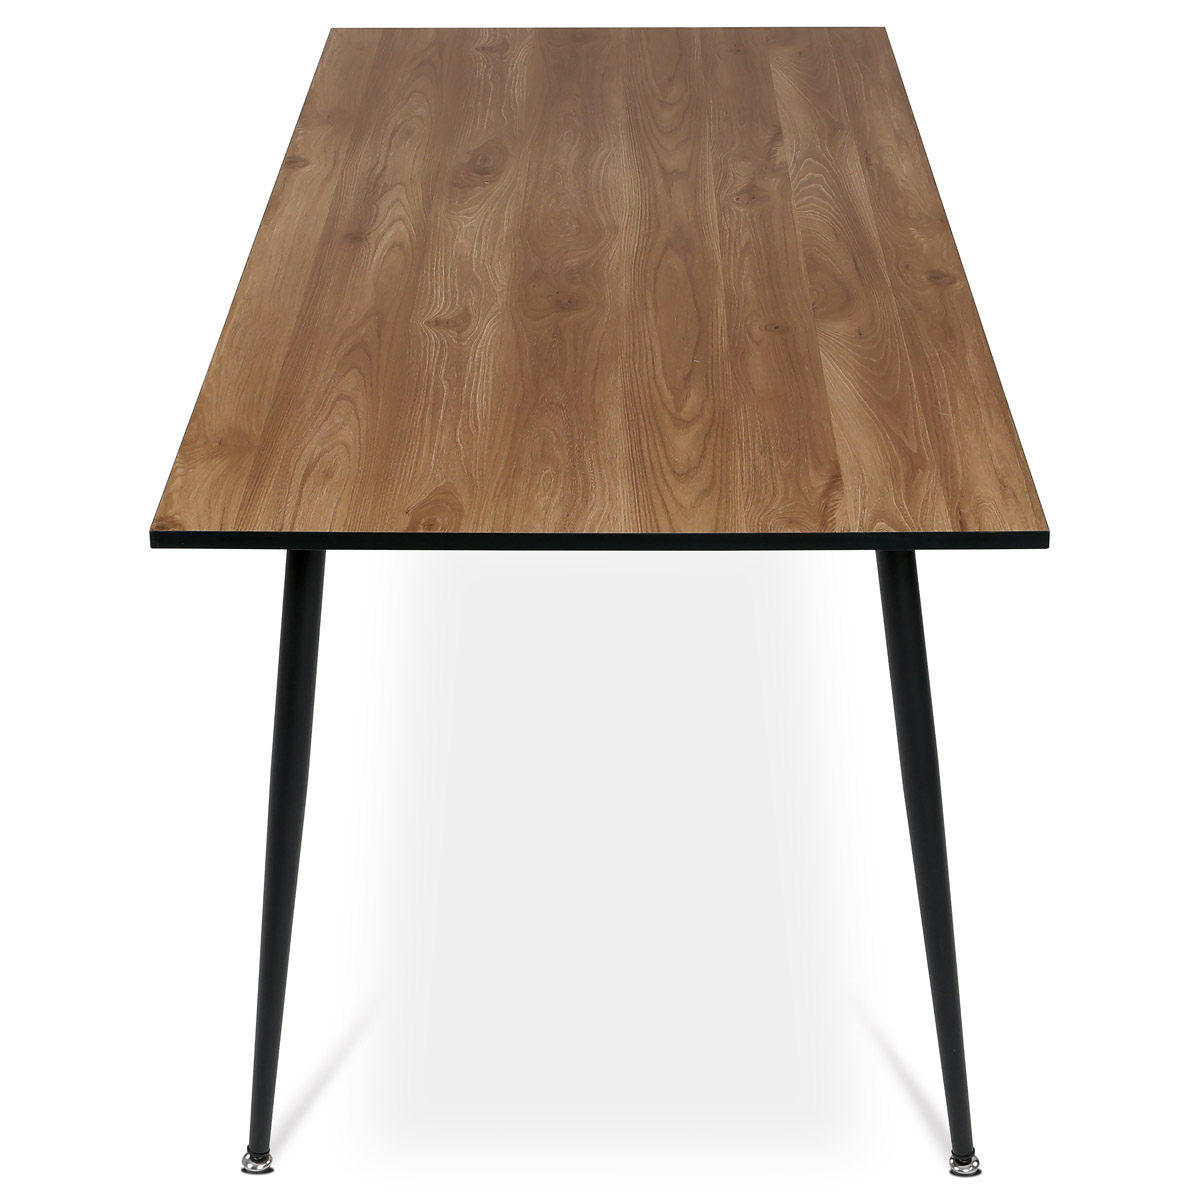 Jídelní stůl, 160x80, deska MDF, dýha divoký dub, kovové nohy,  černý lak